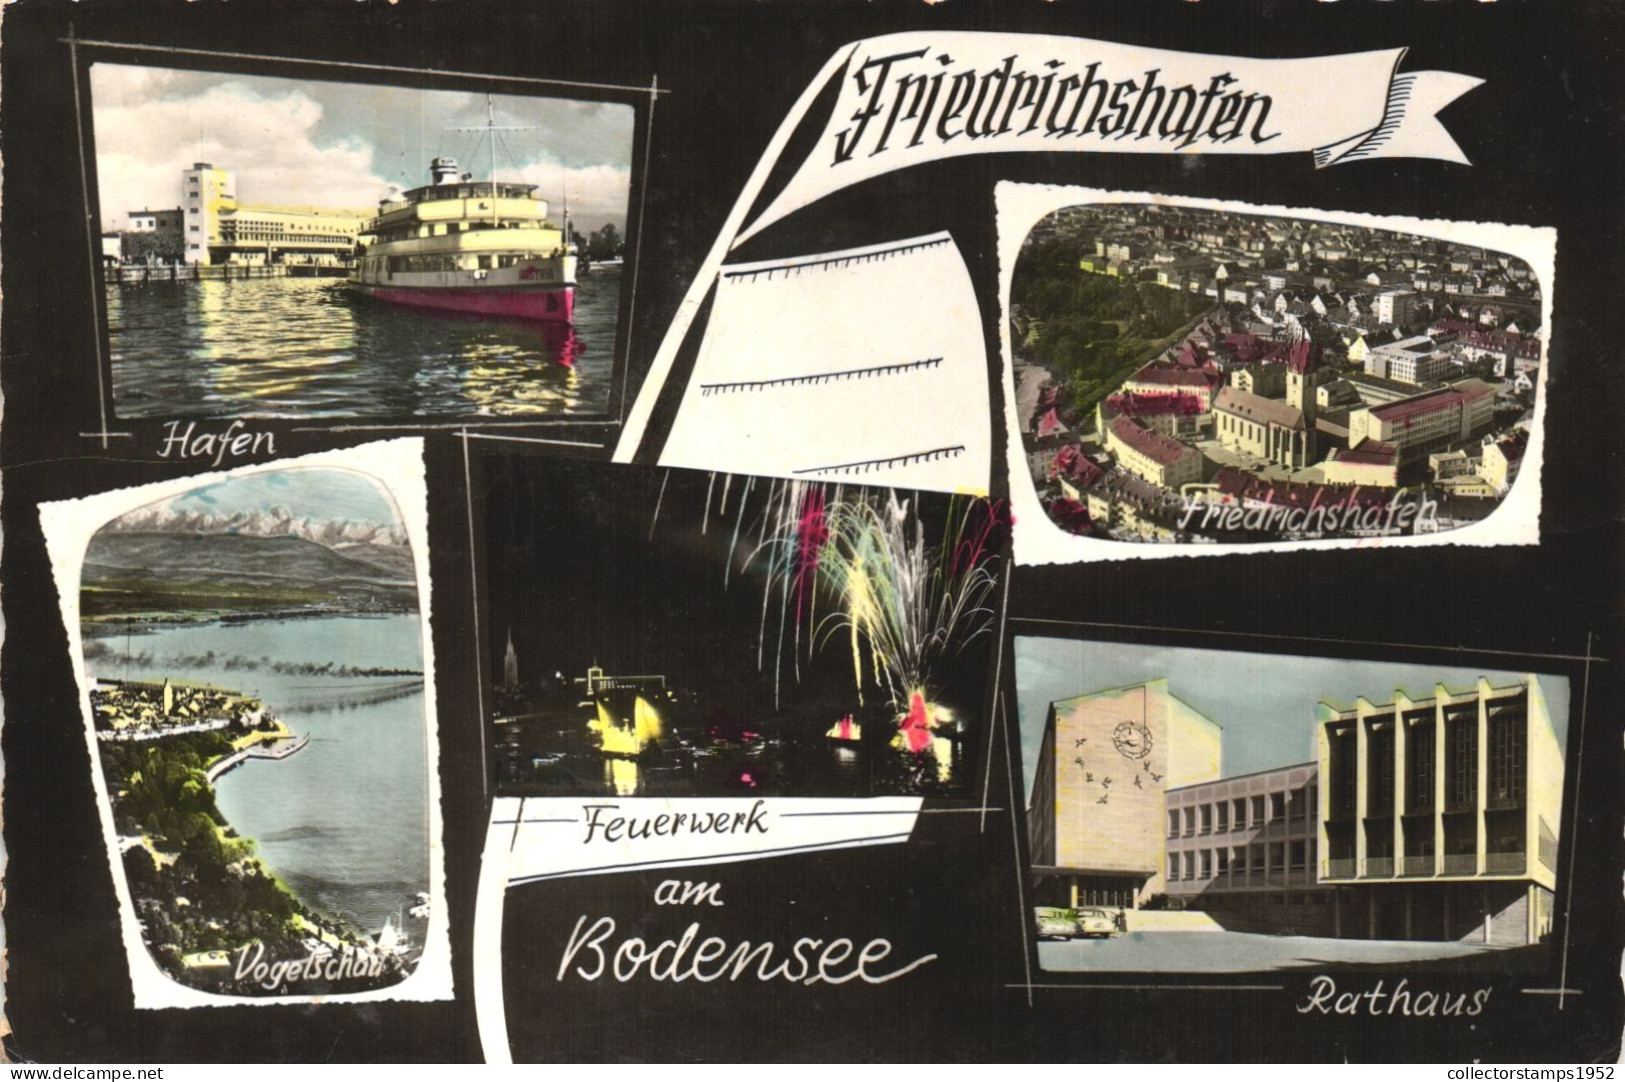 FRIEDRICHSHAFEN, BADEN-WURTTEMBERG, MULTIPLE VIEWS, ARCHITECTURE, SHIP, MOUNTAIN, WIREWORKS, TOWN HALL,GERMANY, POSTCARD - Friedrichshafen